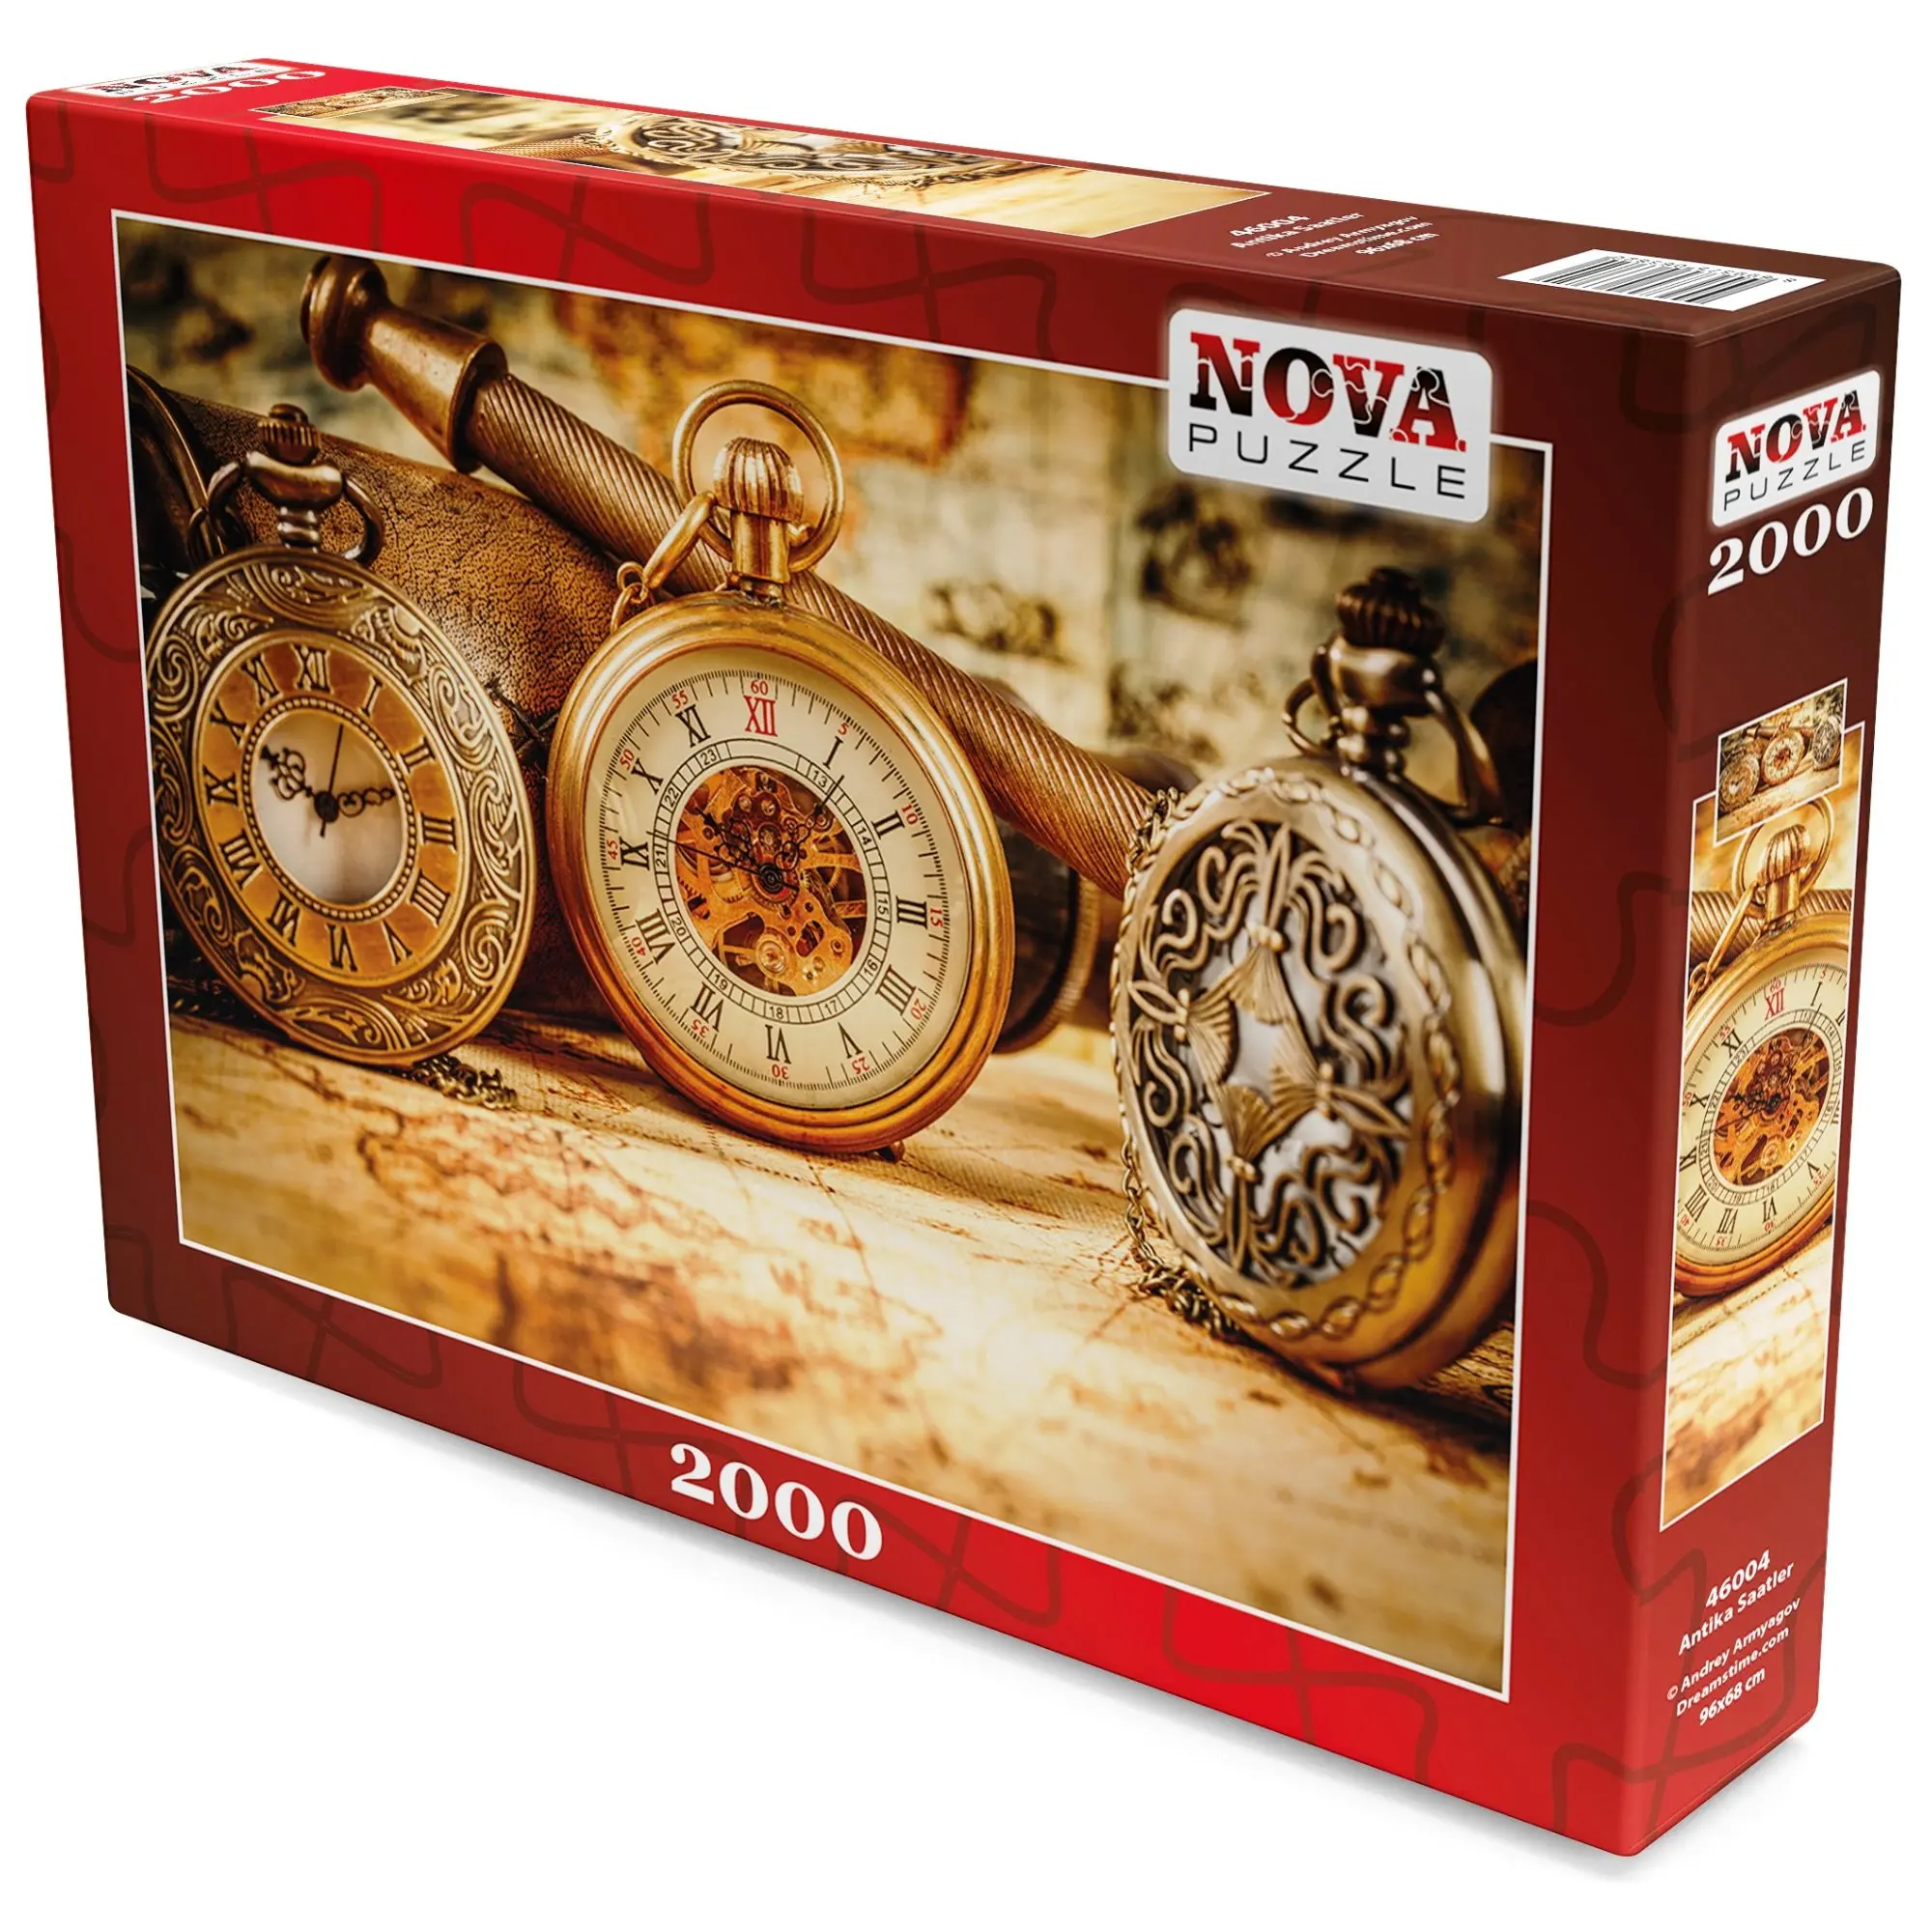 Nova 2000 шт античные часы натюрморт Kahverengi Puzzle-46004-для взрослых 2000 шт картонные старинные часы с Кулиской от AliExpress RU&CIS NEW